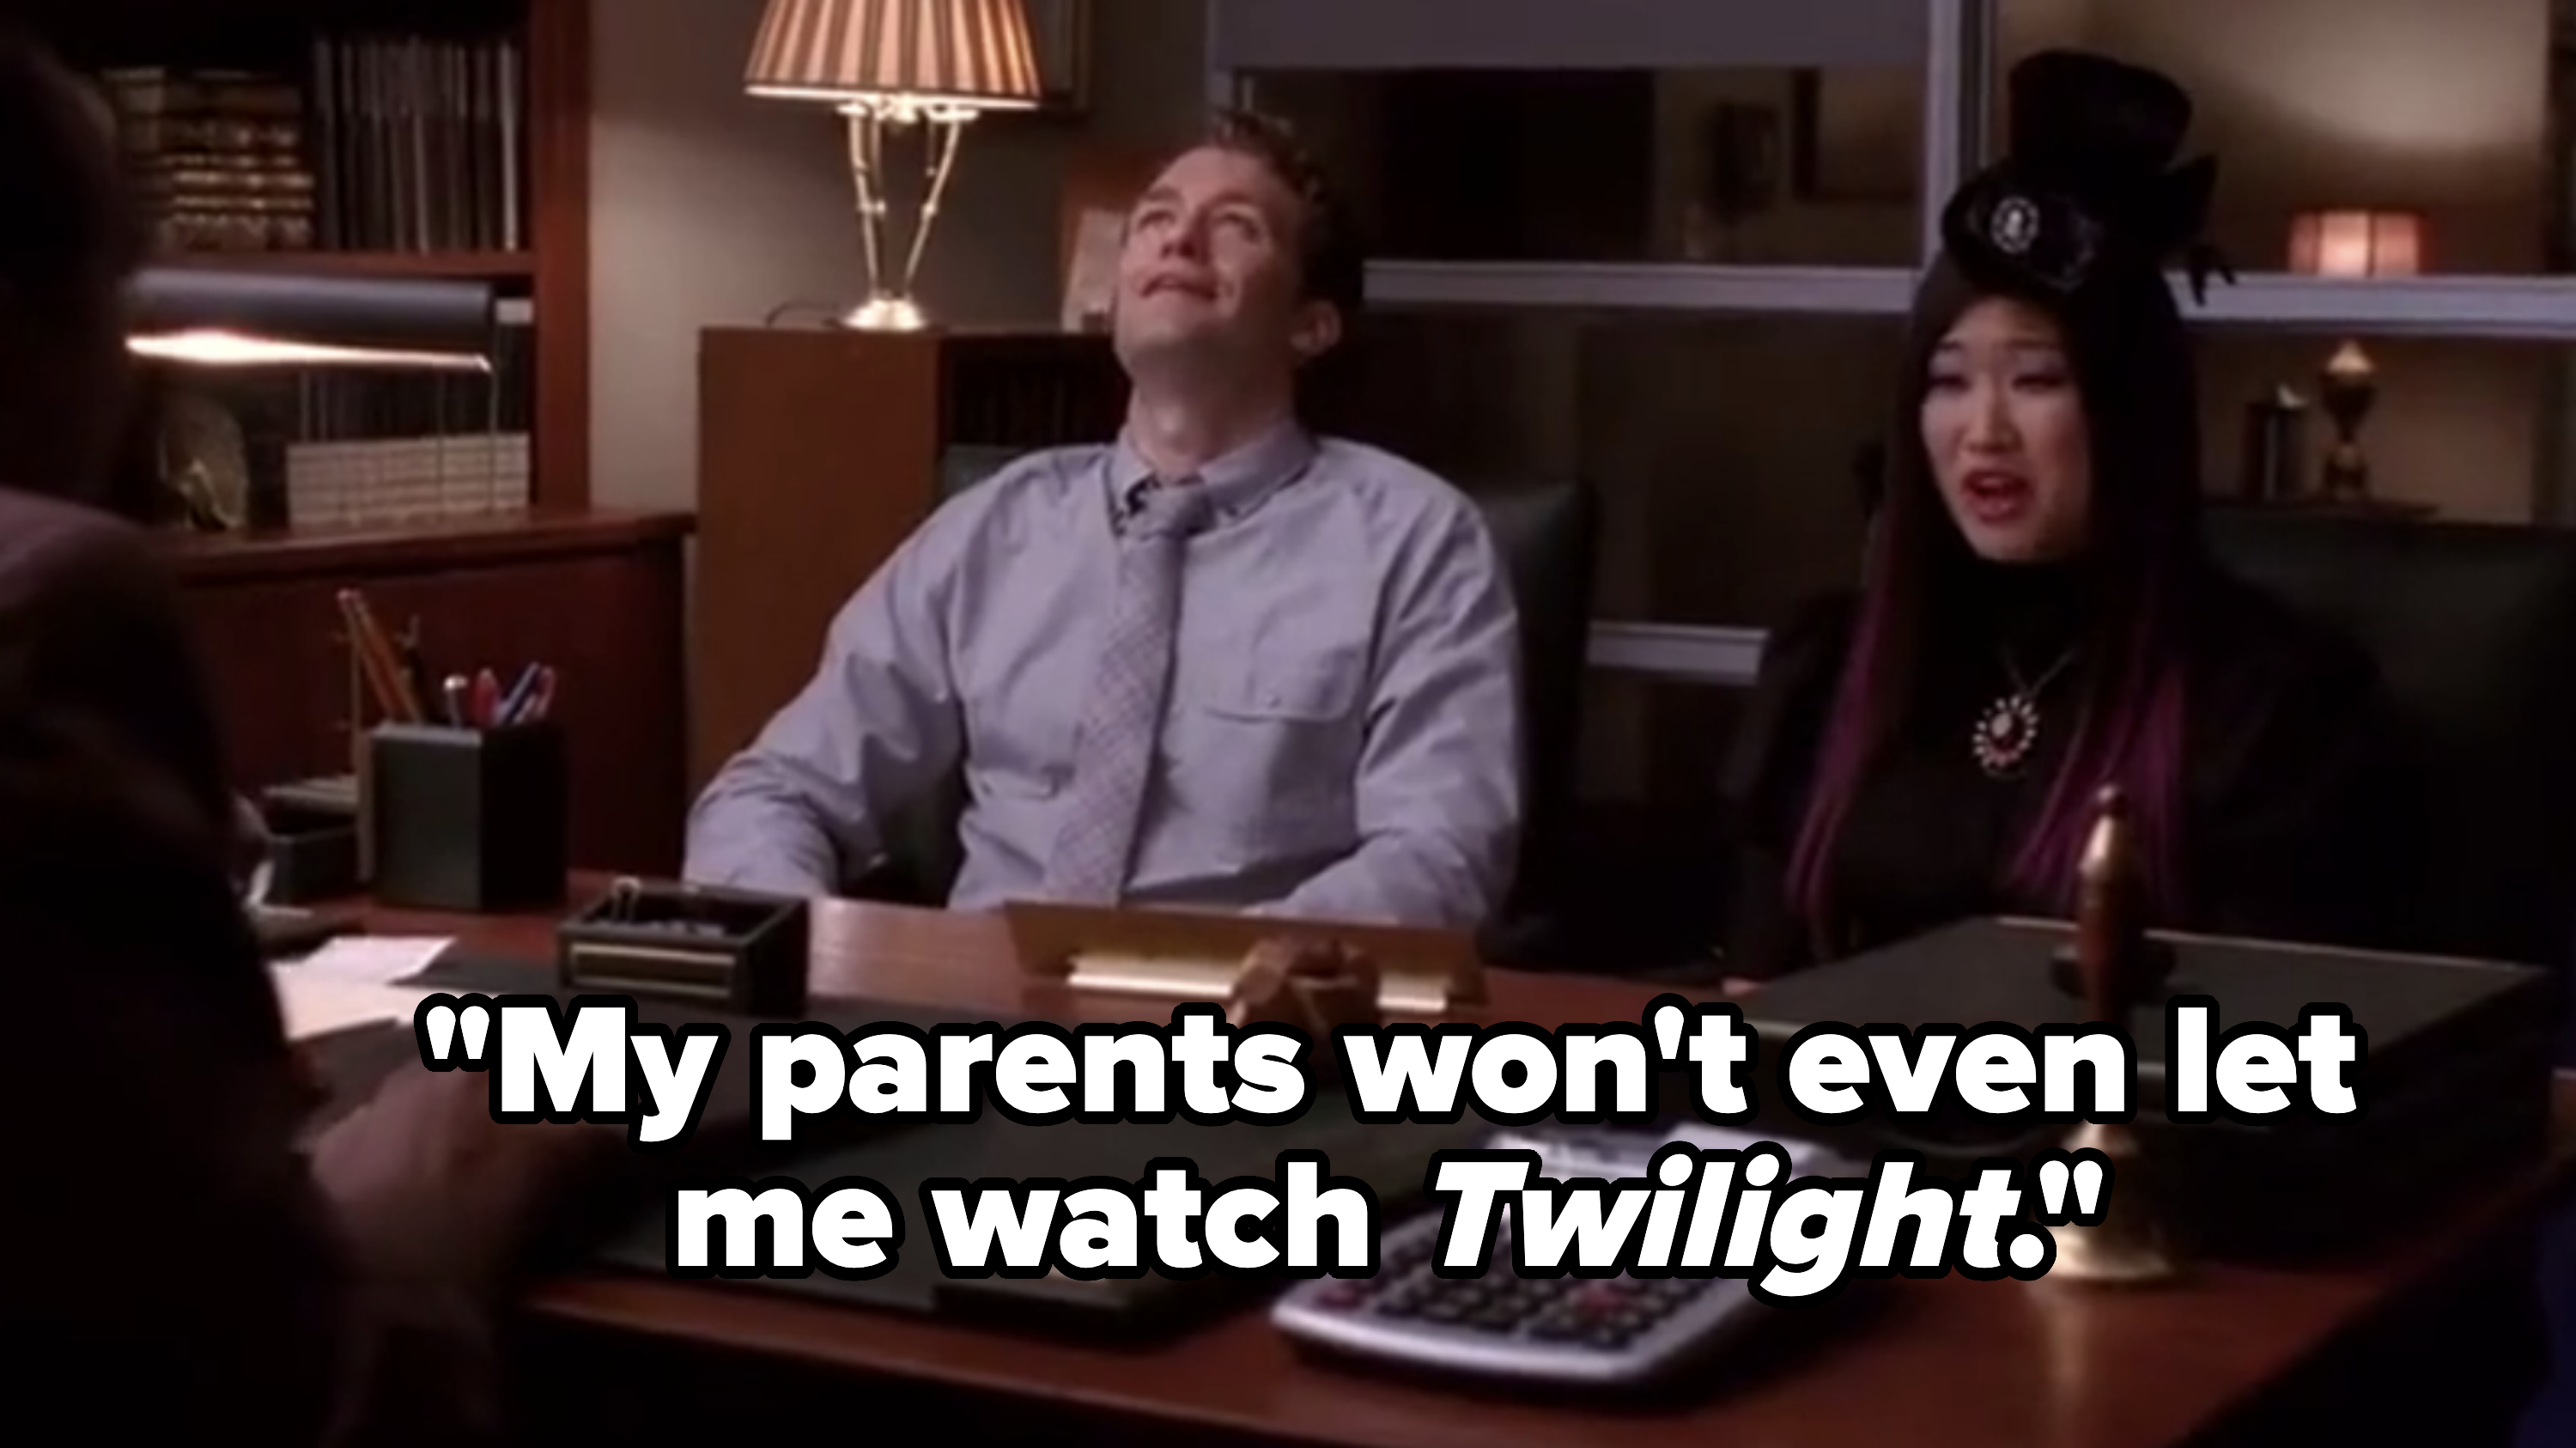 &quot;My parents won&#x27;t even let me watch Twilight.&quot;